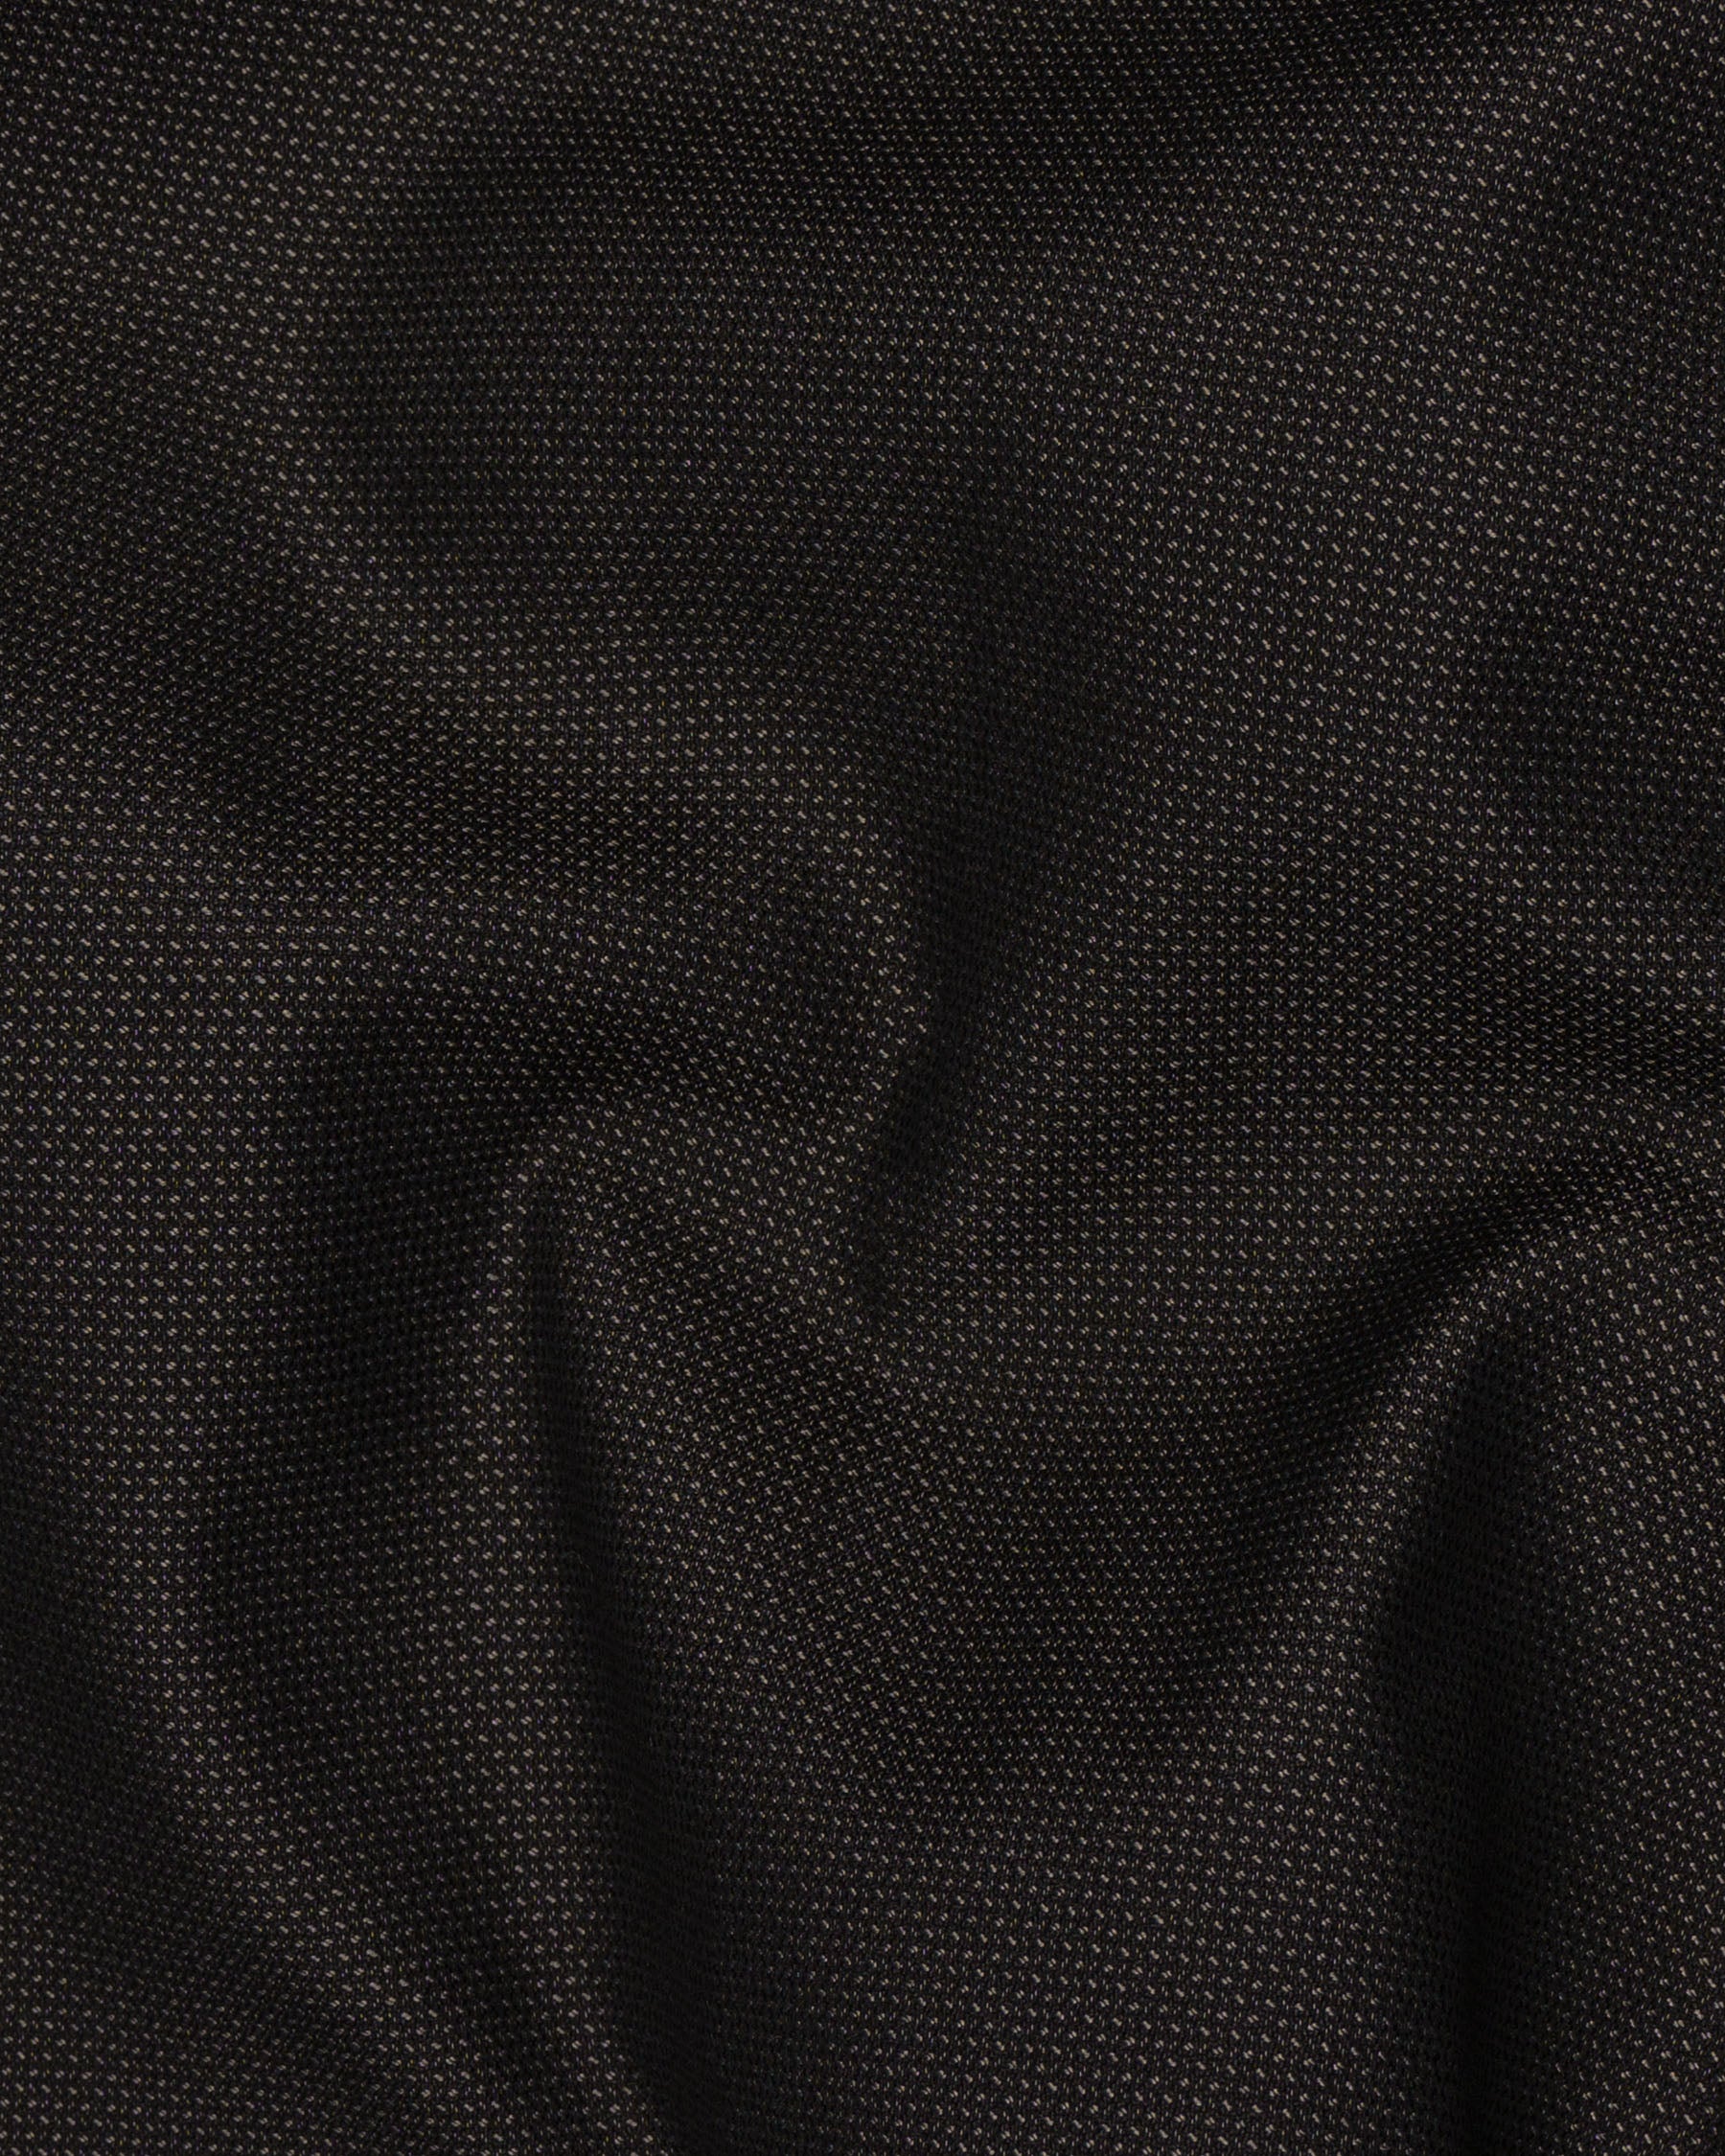 Blackish Brown Wool Rich Pant T1526-28, T1526-30, T1526-32, T1526-34, T1526-36, T1526-38, T1526-40, T1526-42, T1526-44